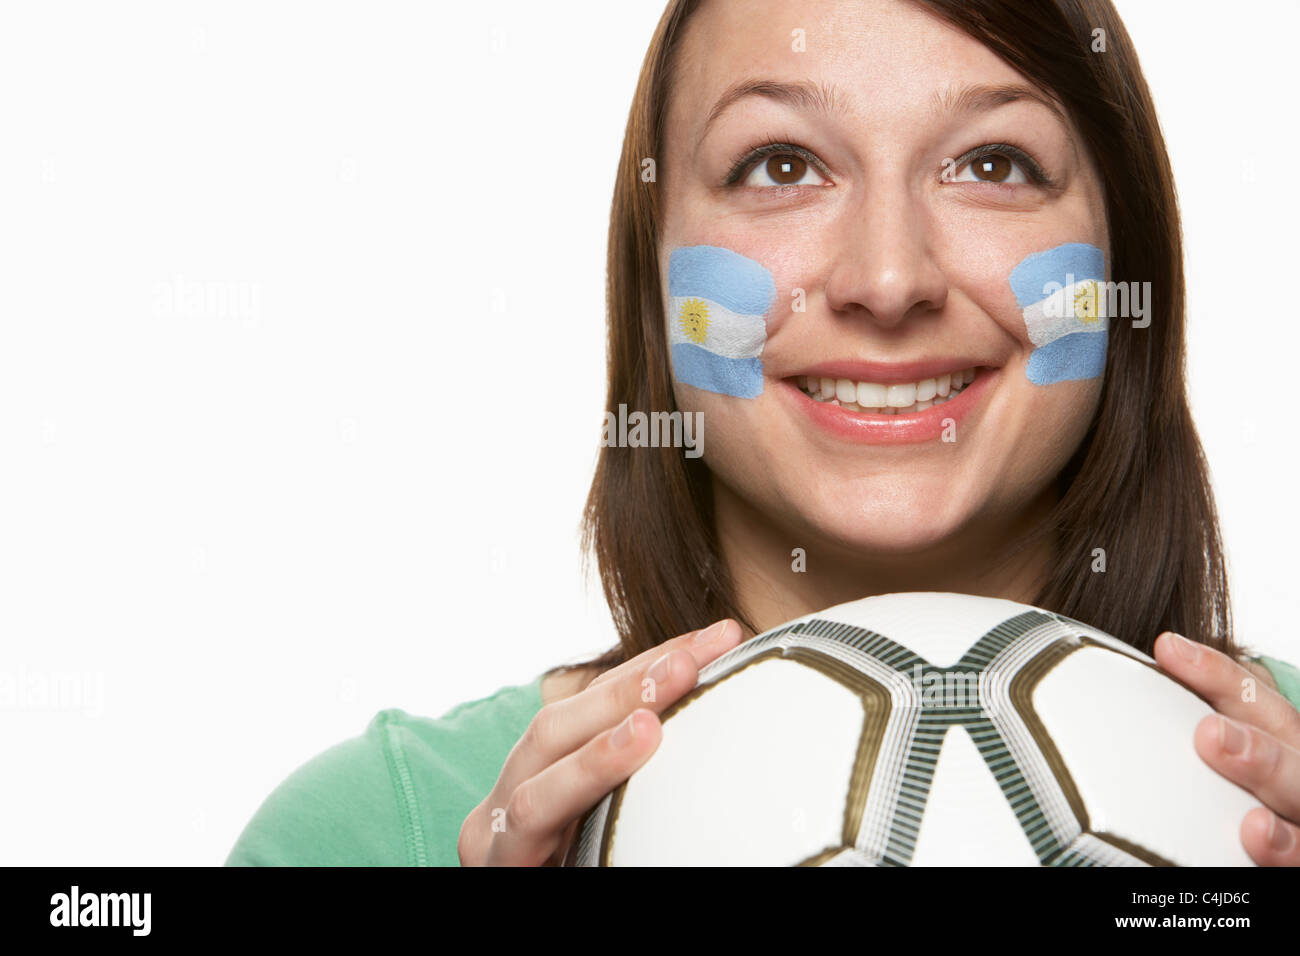 Junge weibliche Fußball-Fan mit argentinischen Flagge auf Gesicht gemalt Stockfoto